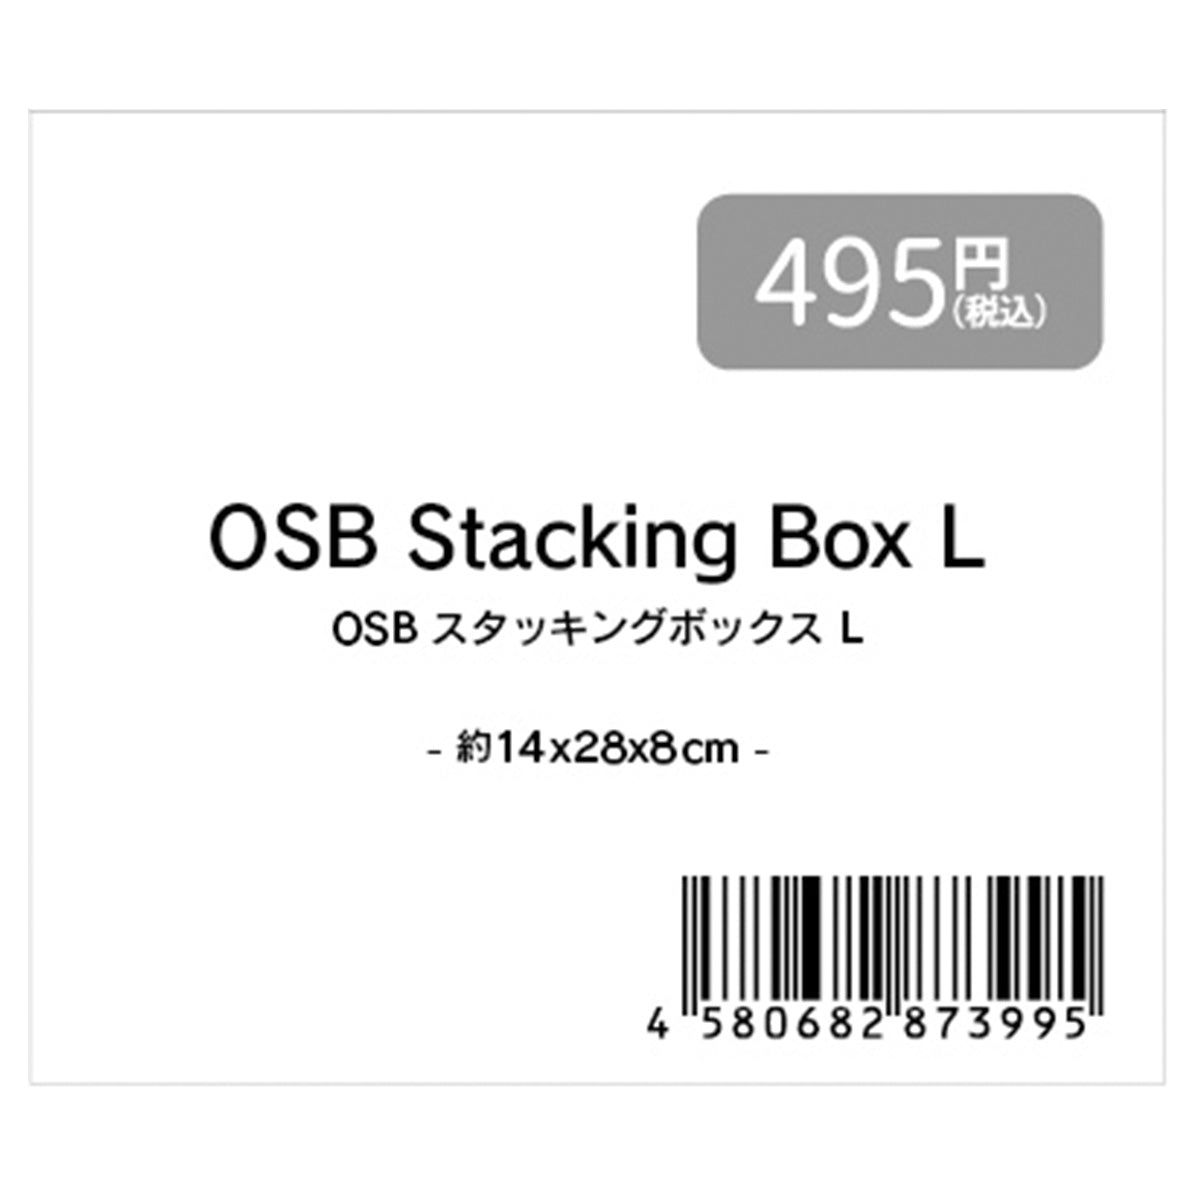 収納ボックス 小物ケース ナチュラル OSBスタッキングボックスL 約14x28x8cm 1523/353368